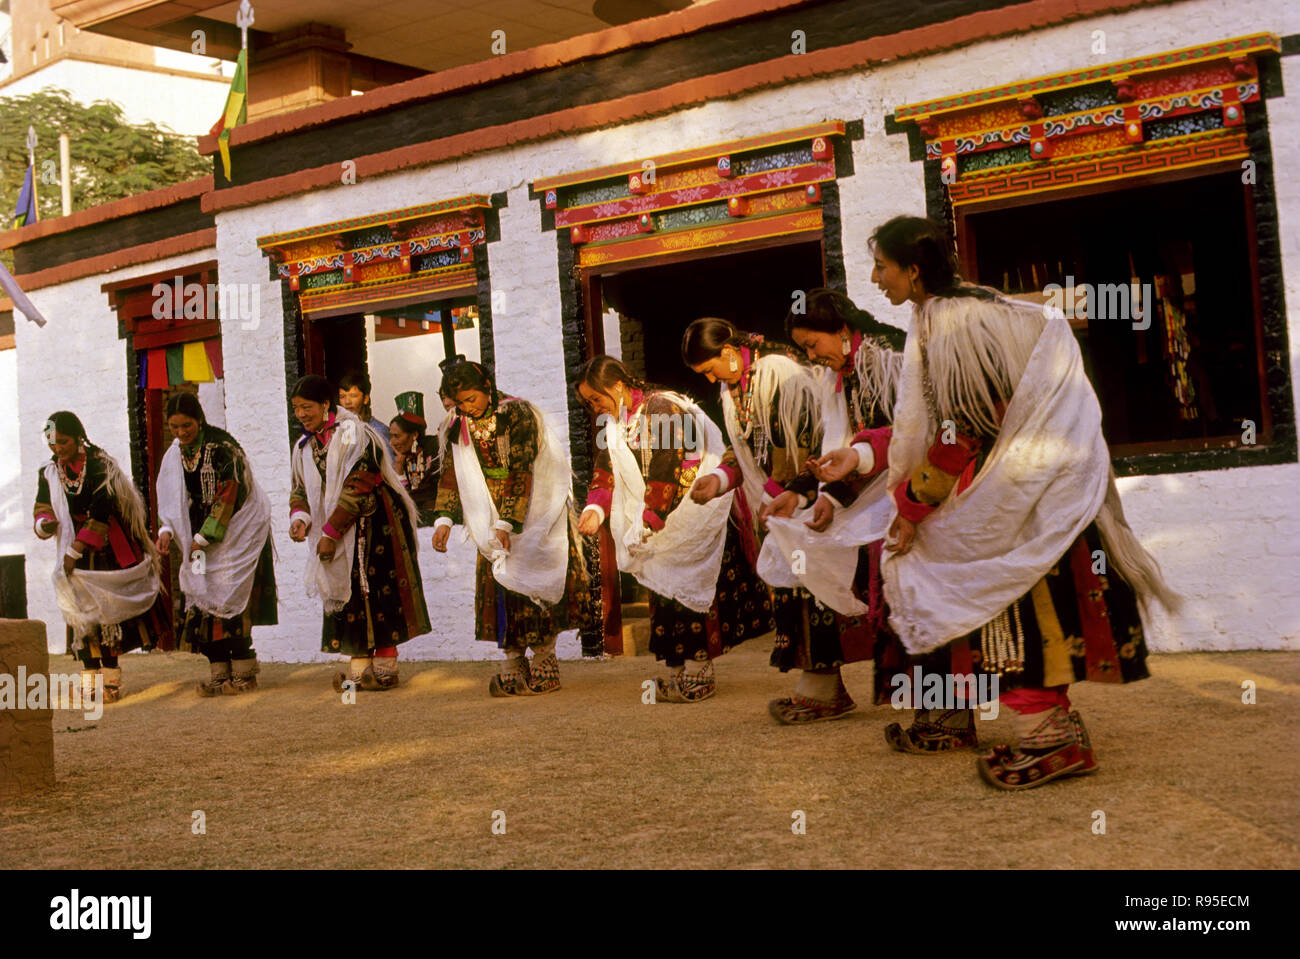 Danse folklorique, Ladakh, Inde Banque D'Images